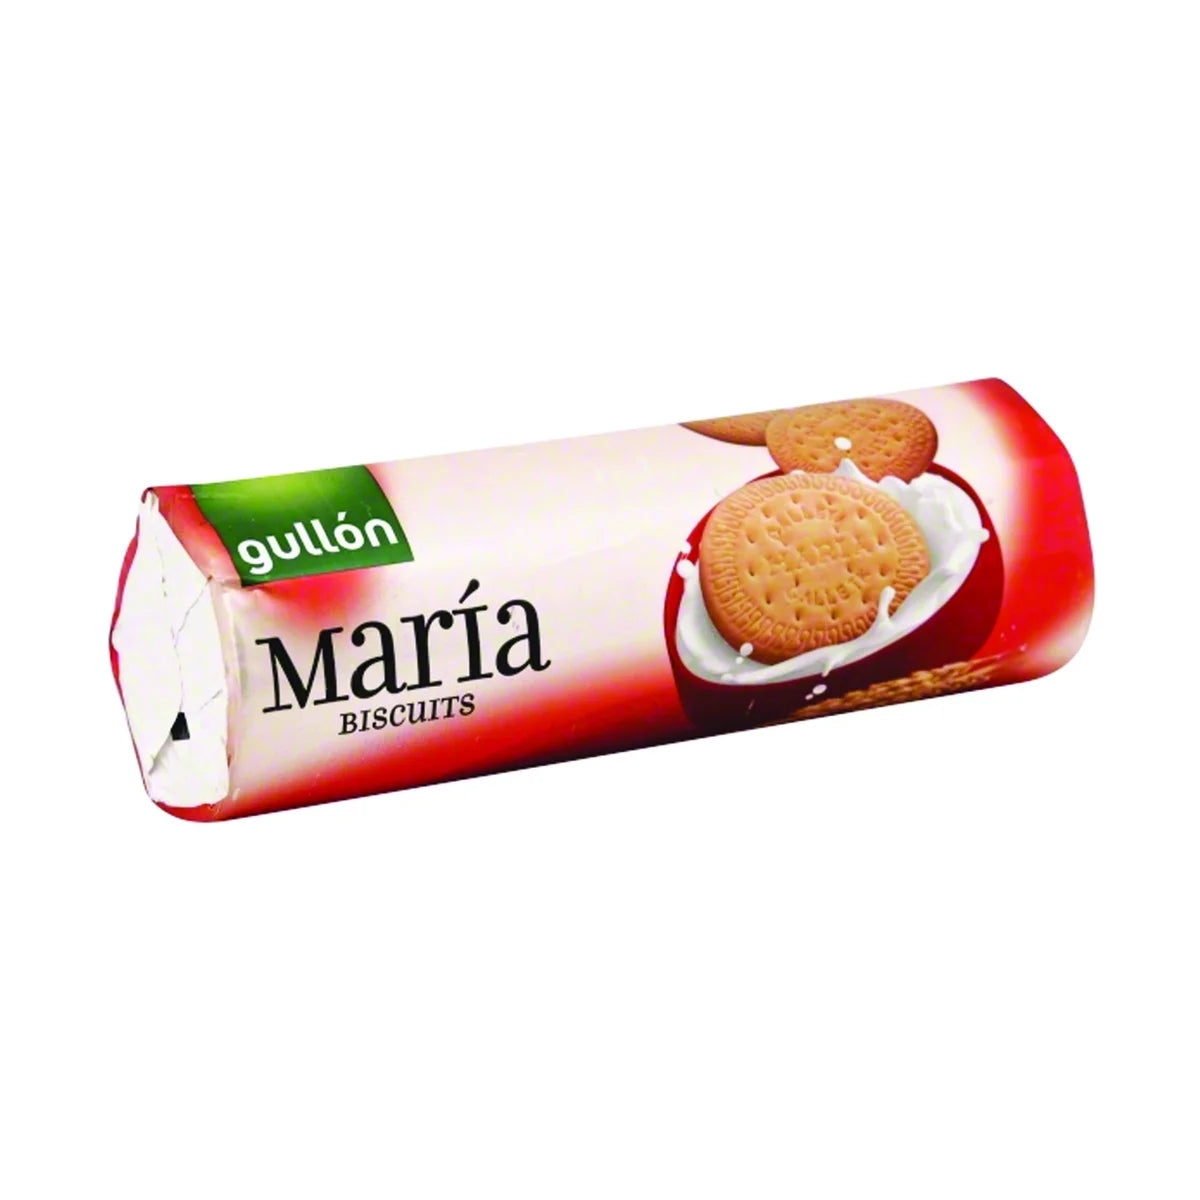 maria-biscuits-rolls-gullon-7-05-oz